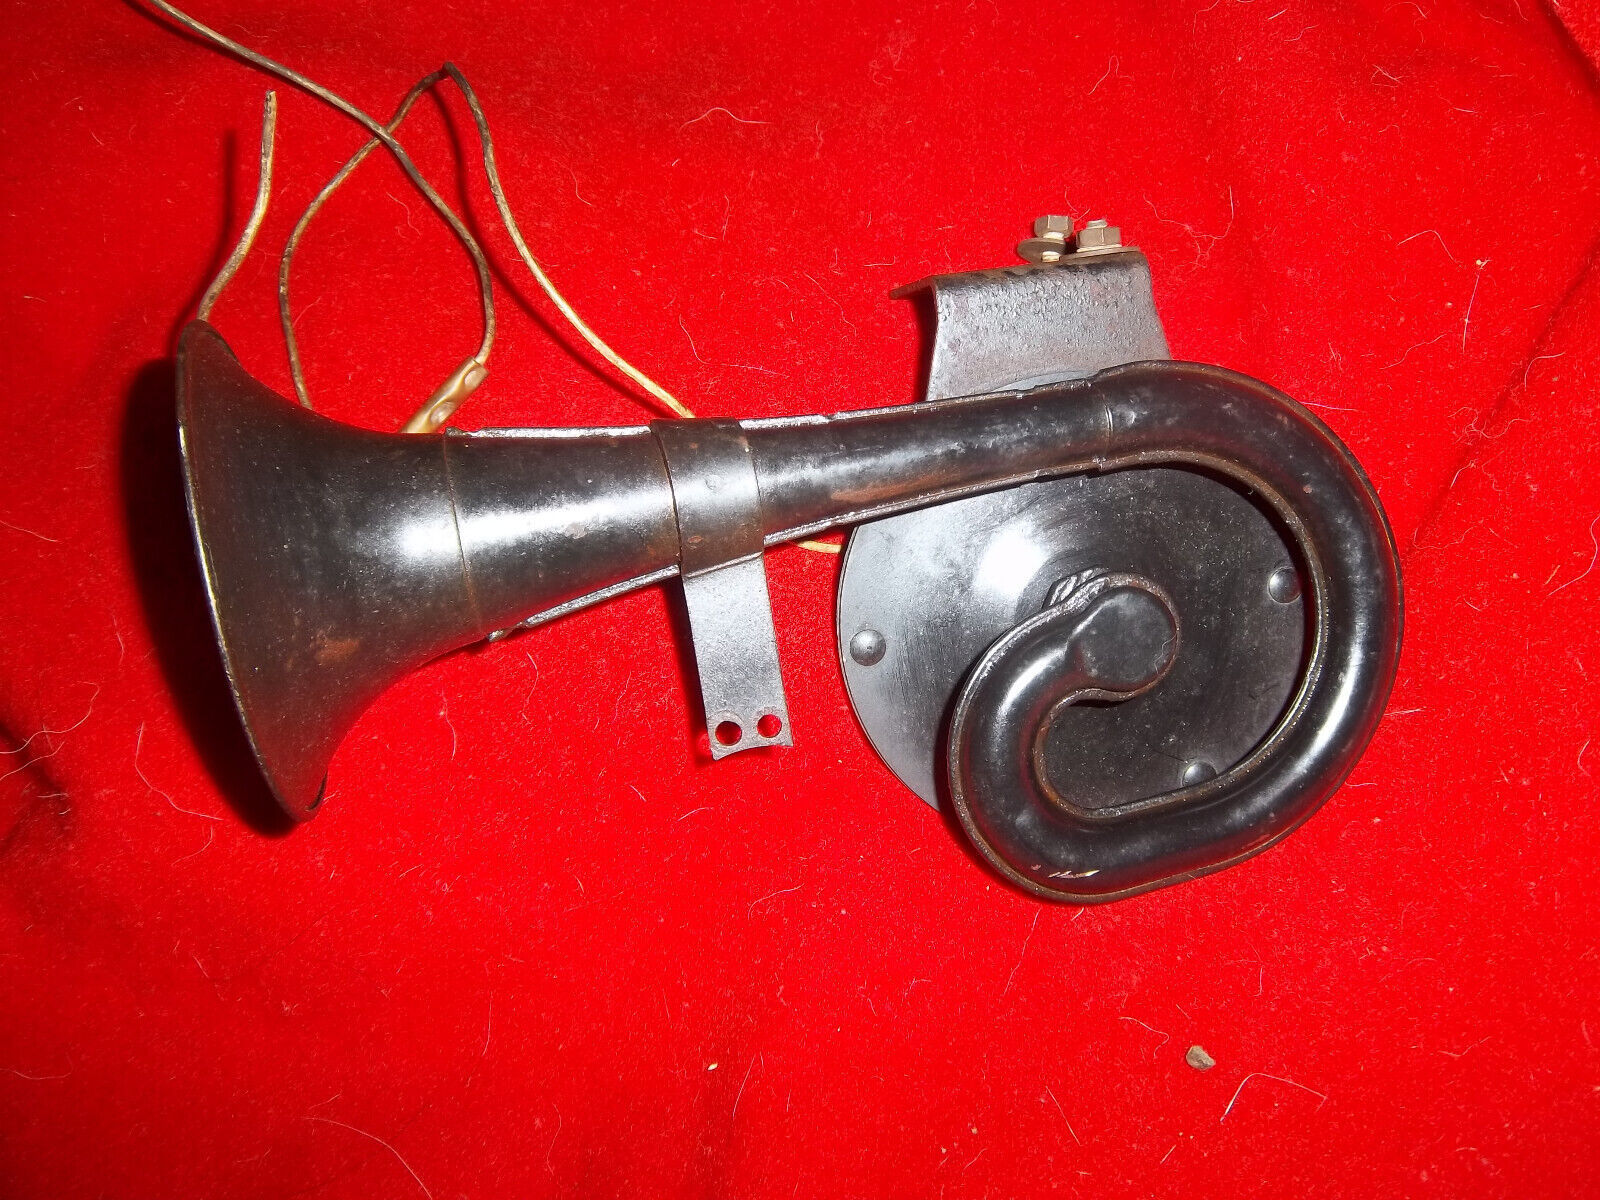 Antique Auto Twist Snail Trumpet Dual Horn Car Original Used Parts Vintage